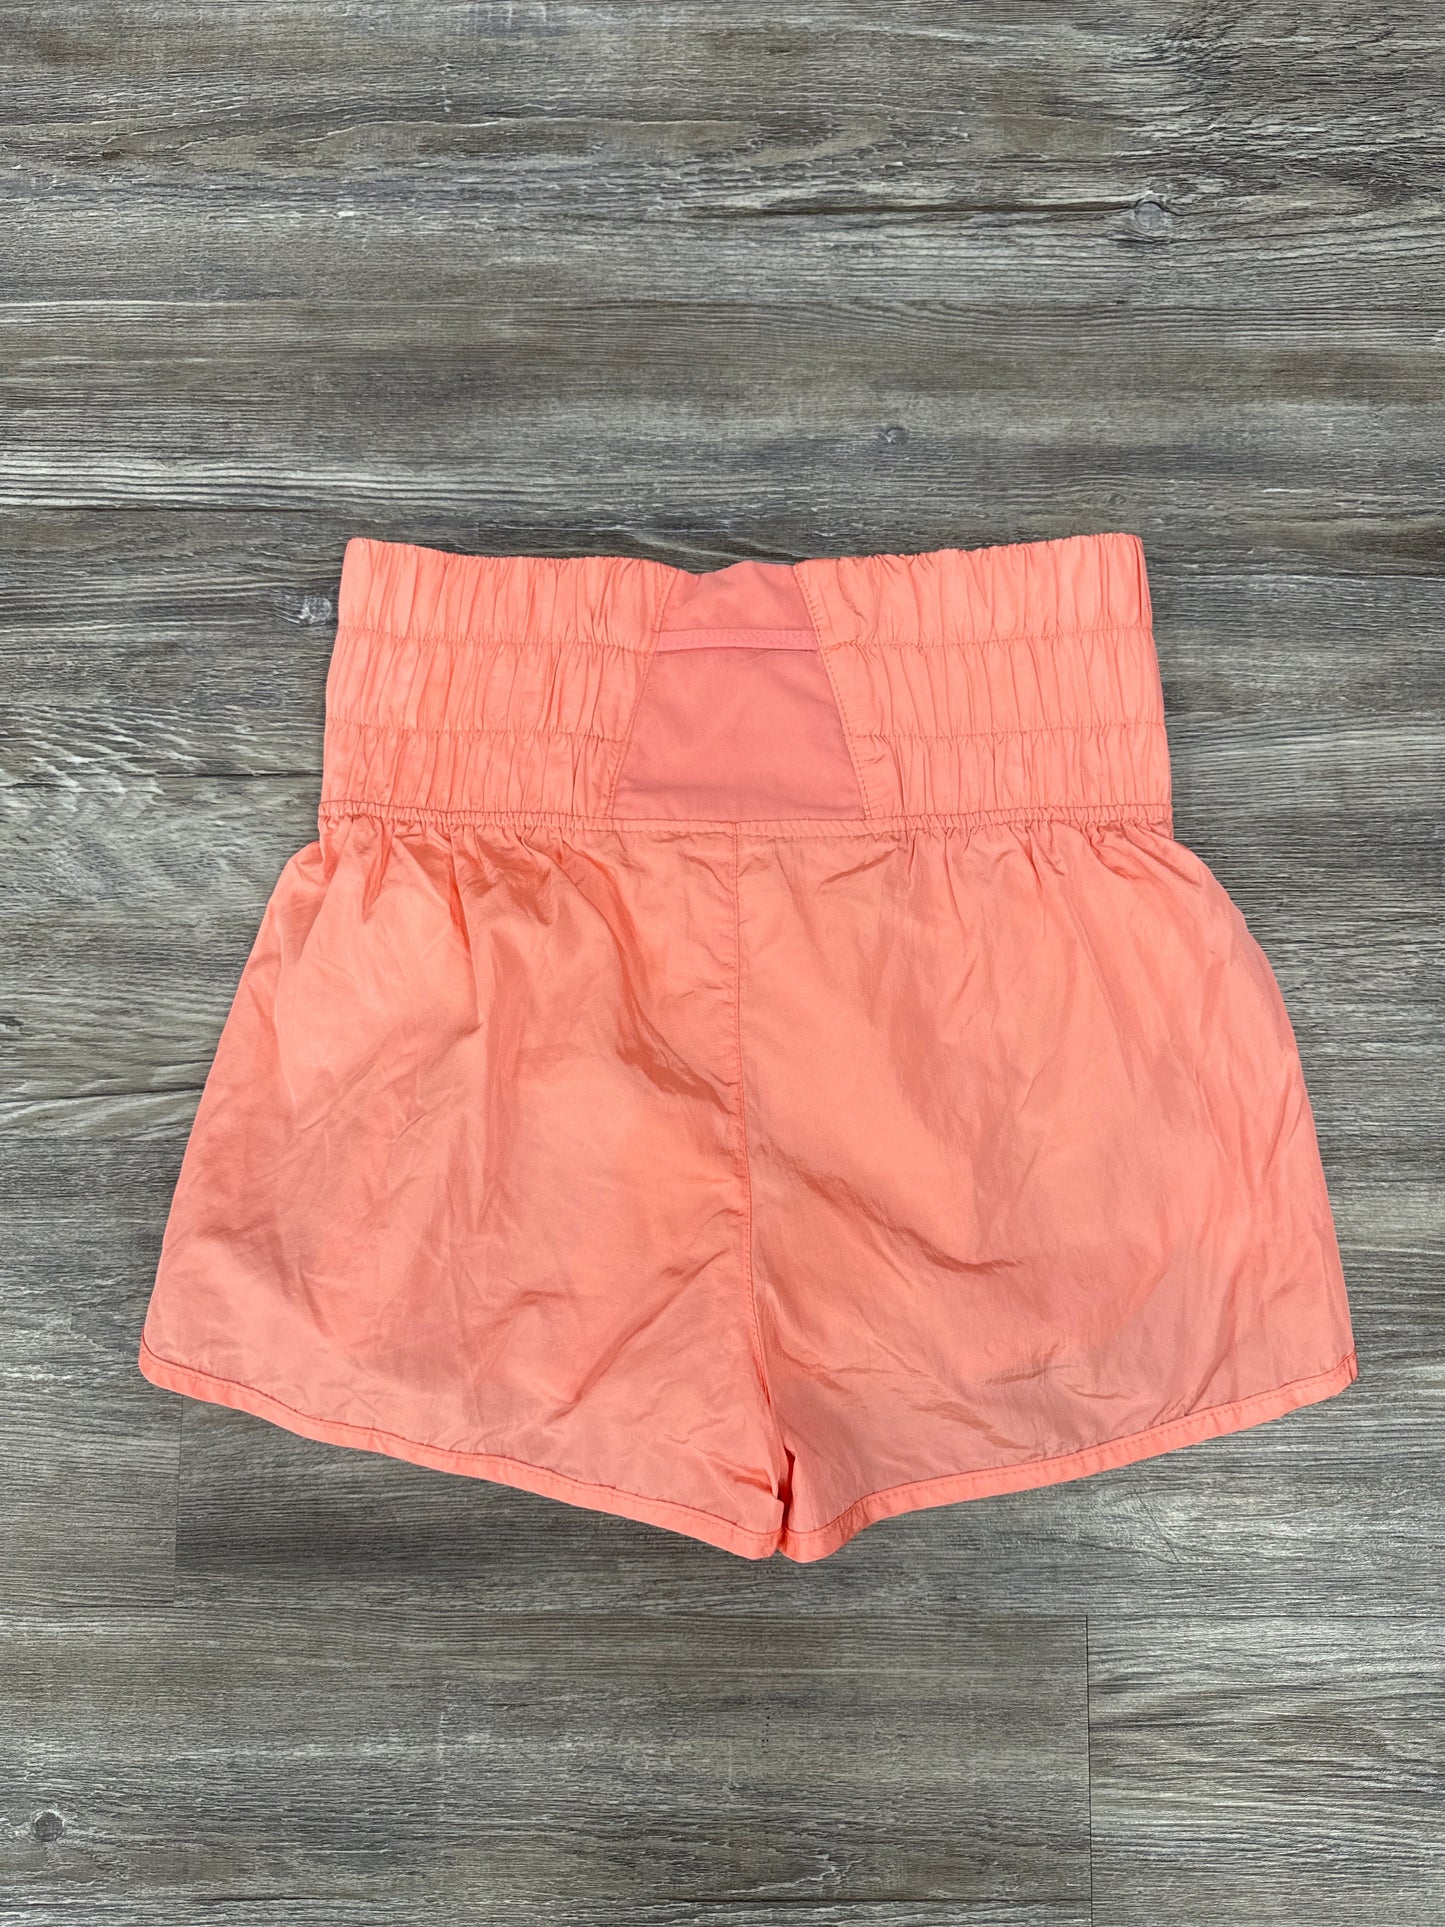 Orange Athletic Shorts Free People, Size M